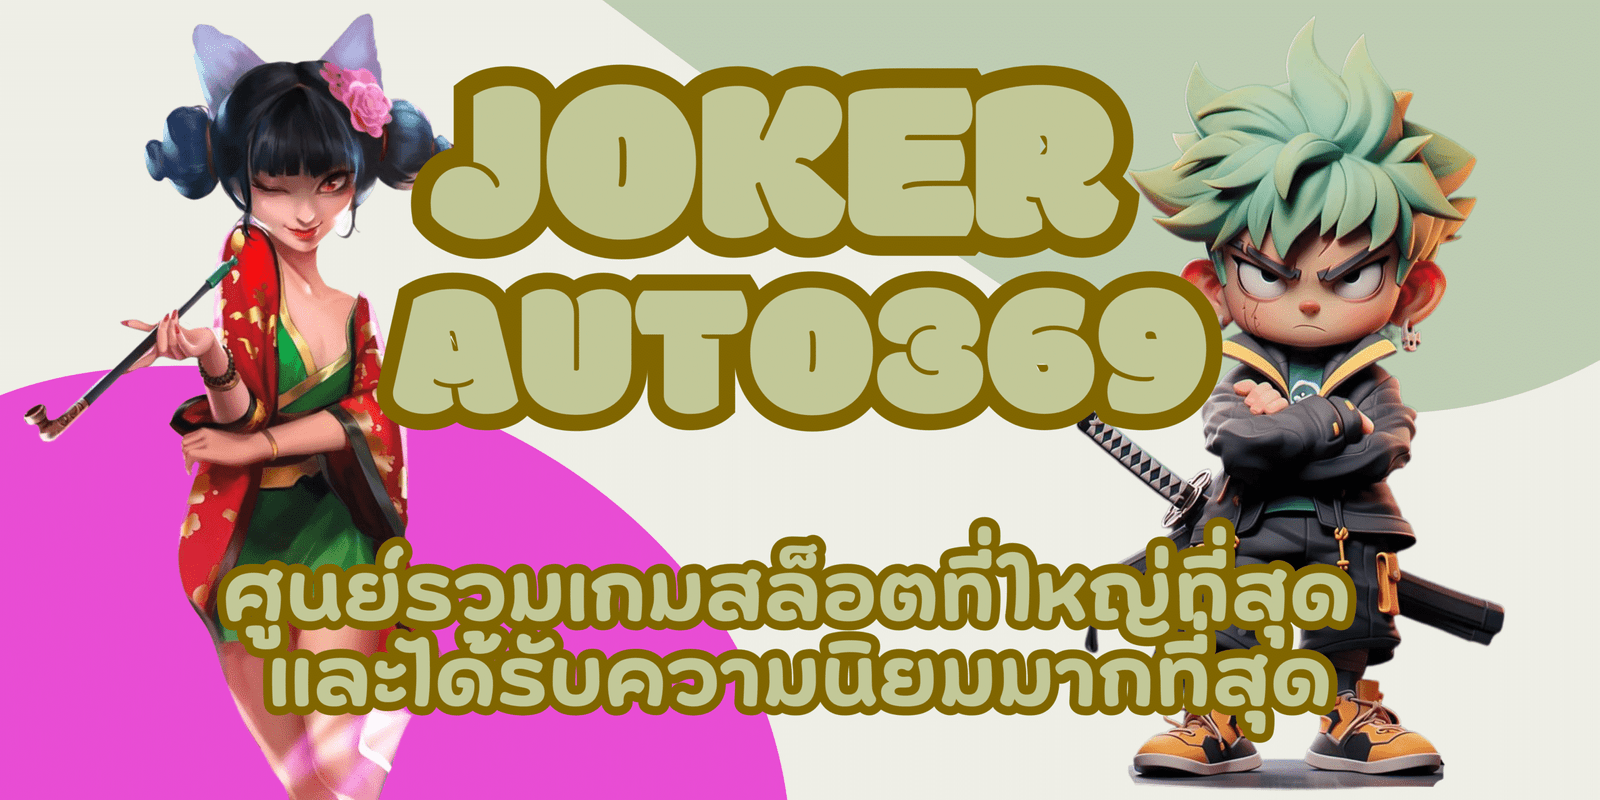 joker-auto369-สมัครสมาชิก